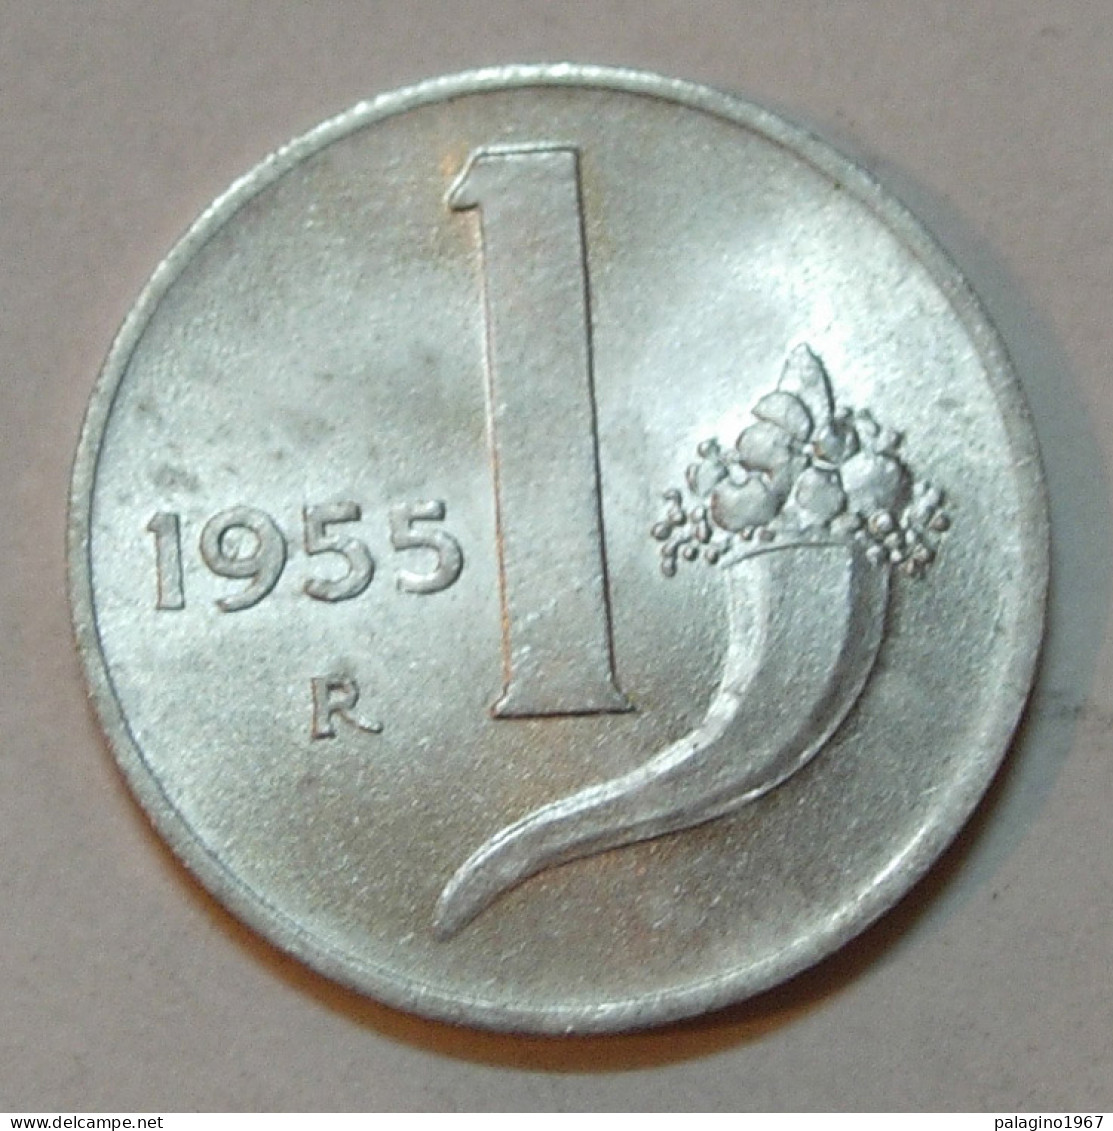 REPUBBLICA ITALIANA 1 Lira Cornucopia 1955 FDC  - 1 Lire